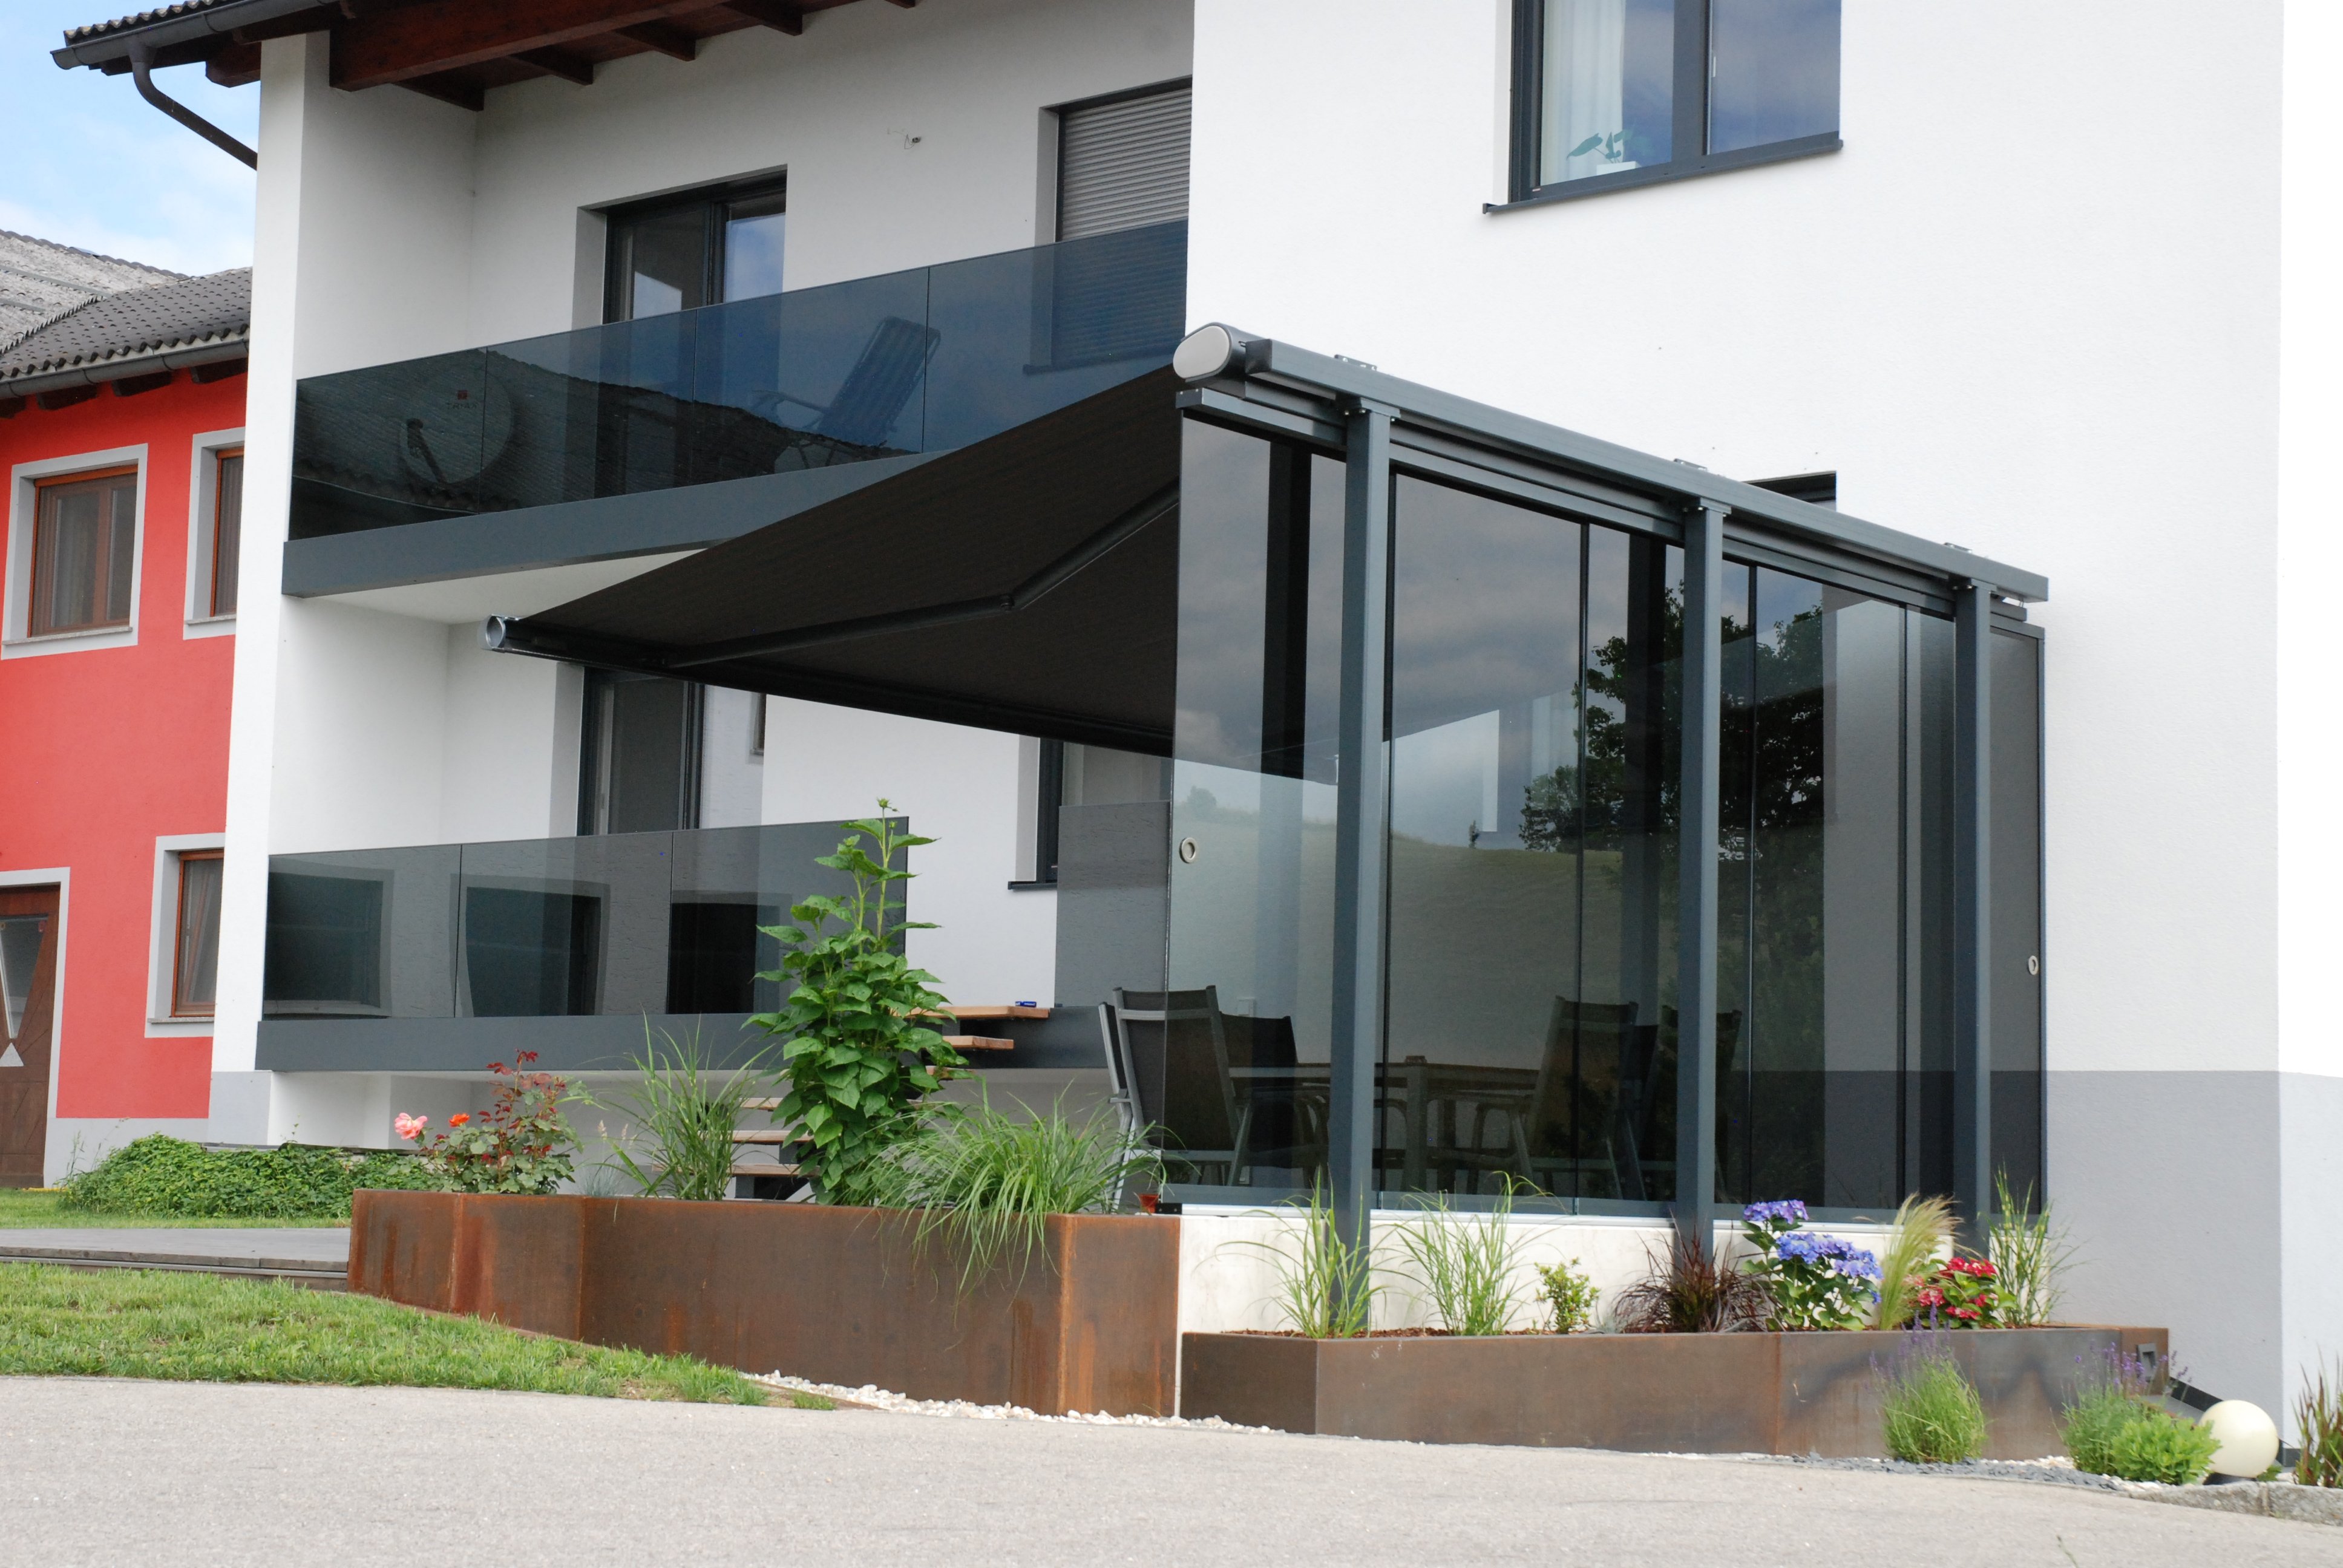 Fenster Schmidinger on X: Neue Referenz in Oberösterreich! Flexibler  Windschutz zum Aufschieben und Beschatten! Infos und viele Bilder findest  du auf  #Windschutz #Terrasse #Terrassenverglasung  #Schiebetüren #Glasschiebetüren